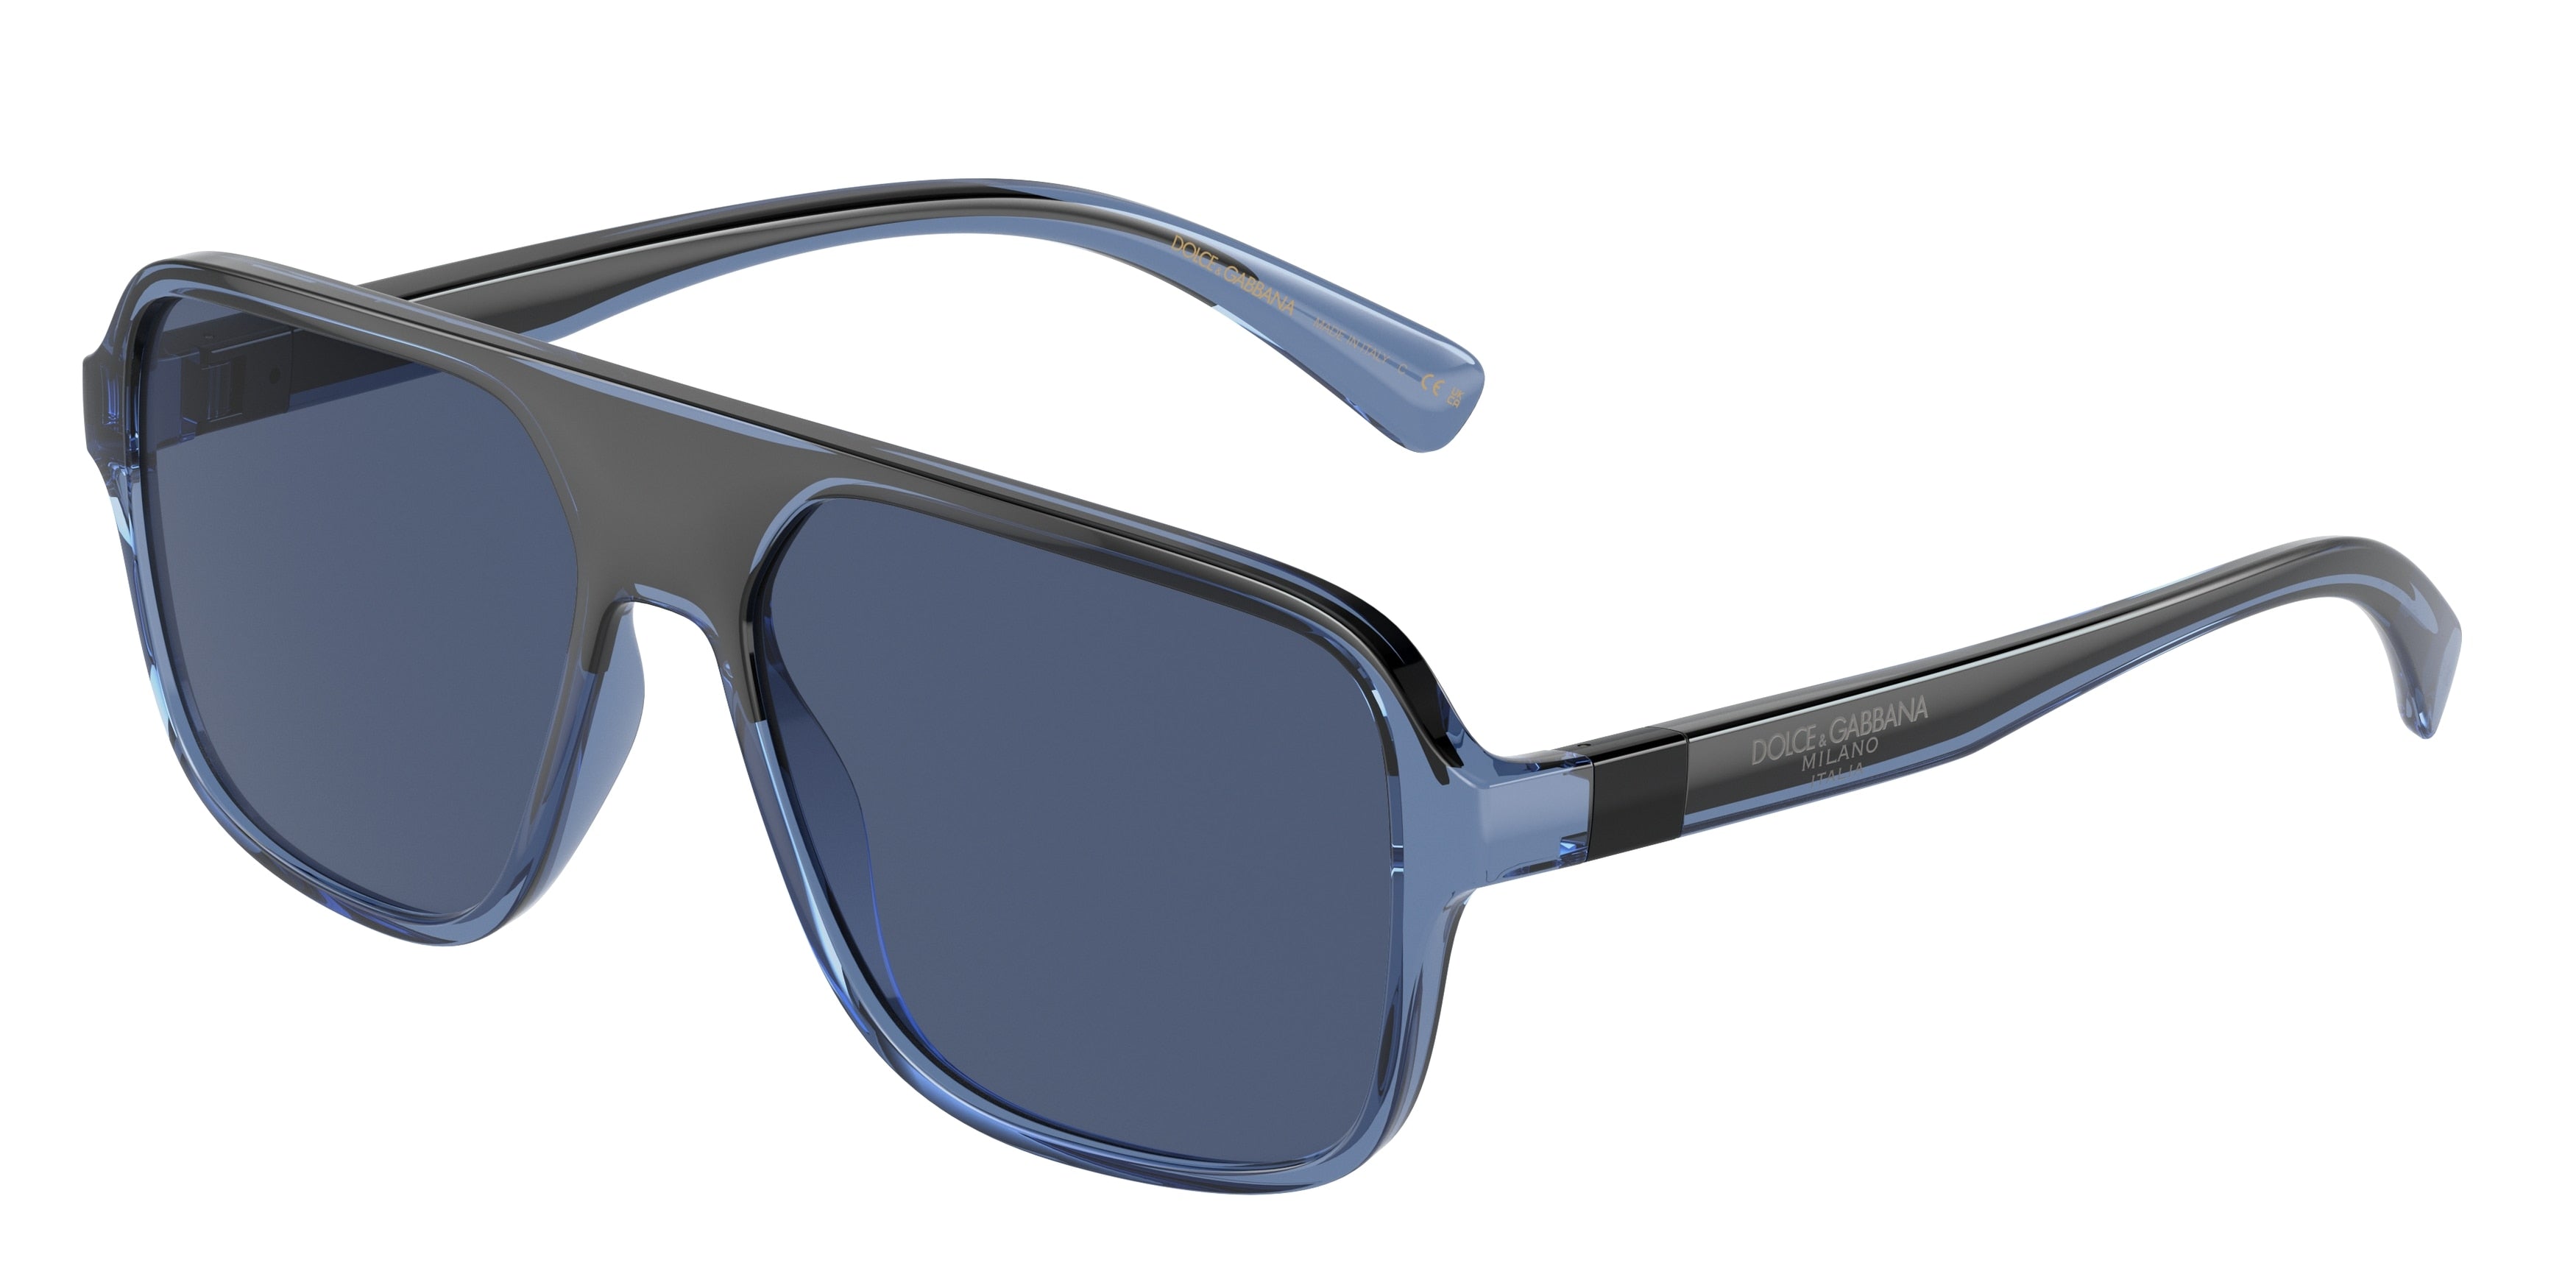 DOLCE & GABBANA DG6134 Square Sunglasses  325880-Transparent Blue/Black 57-145-16 - Color Map Blue